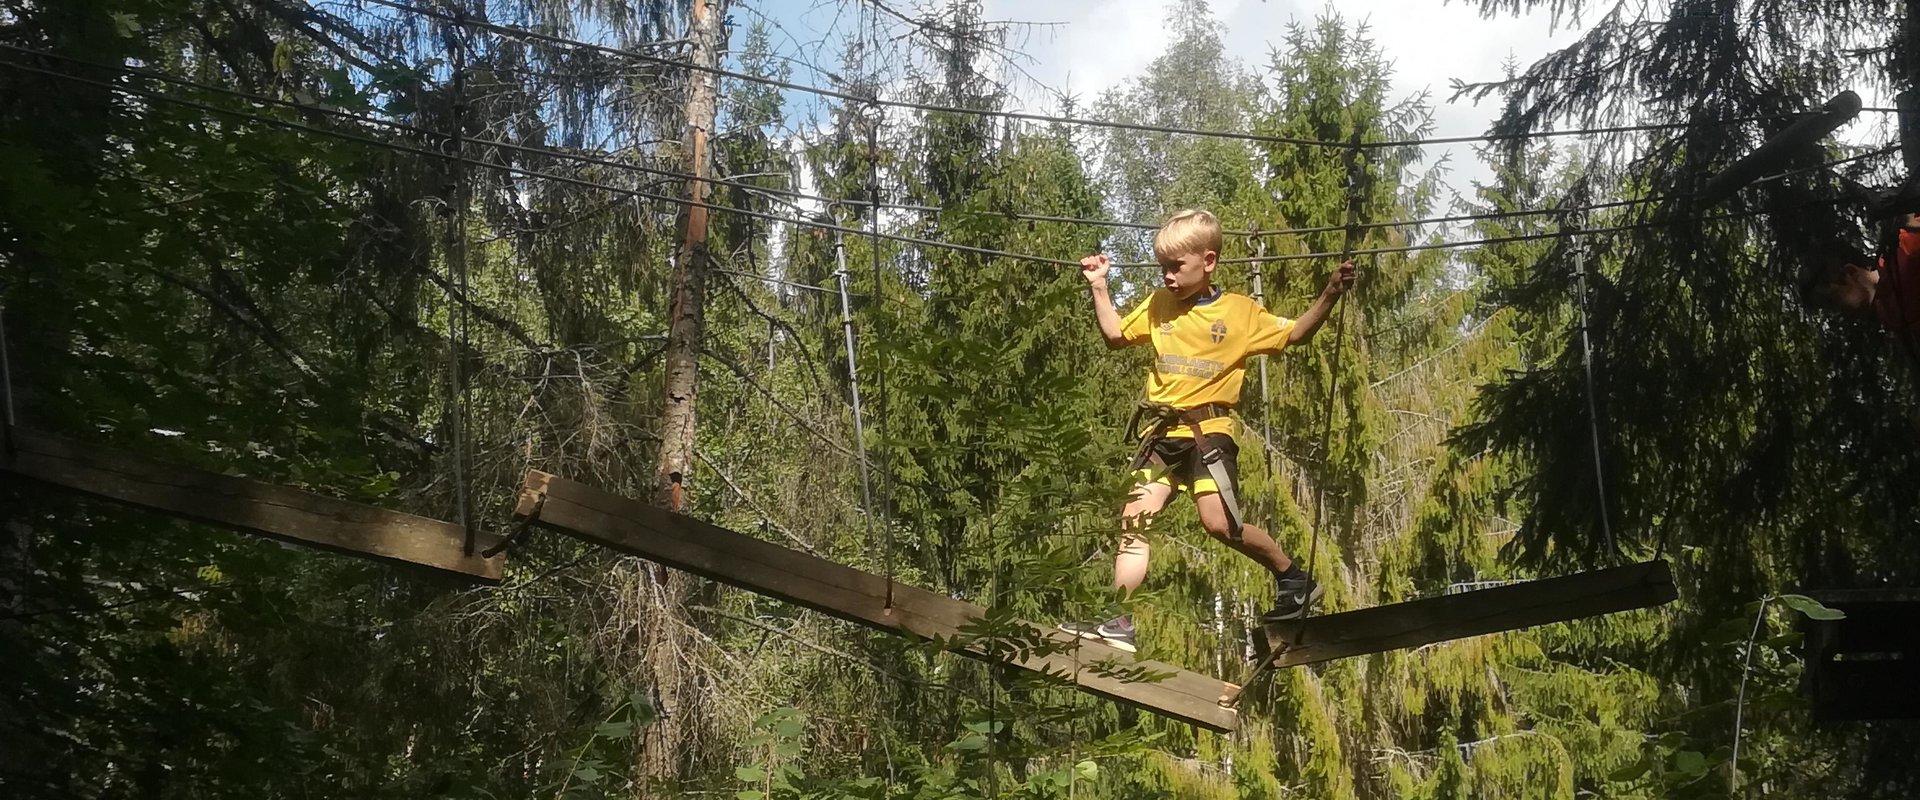 Abenteuerpark von Otepää